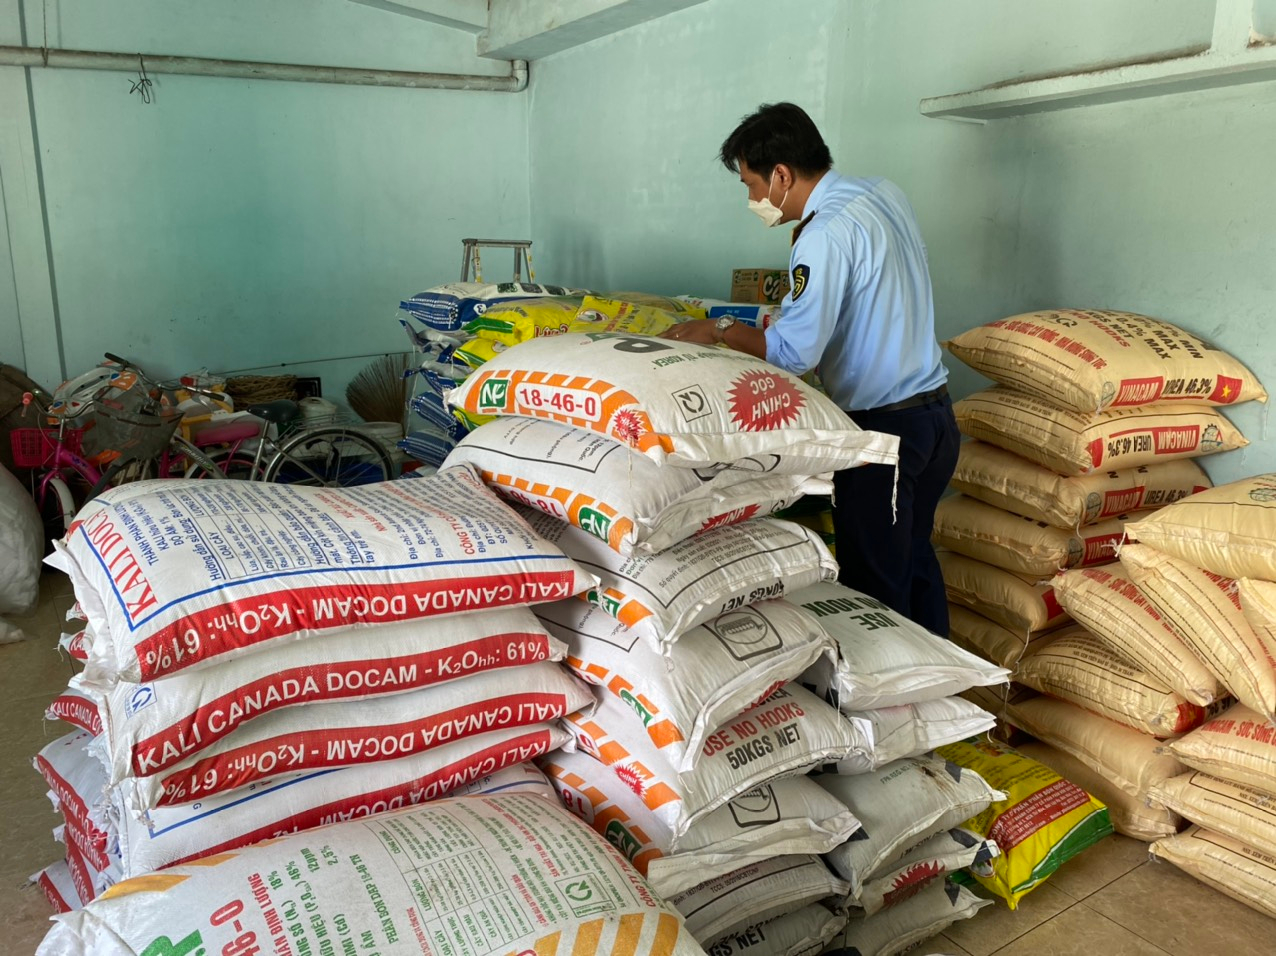 Lại phát hiện hàng loạt vi phạm về kinh doanh phân bón, thuốc bảo vệ thực vật tại Tiền Giang - Ảnh 1.